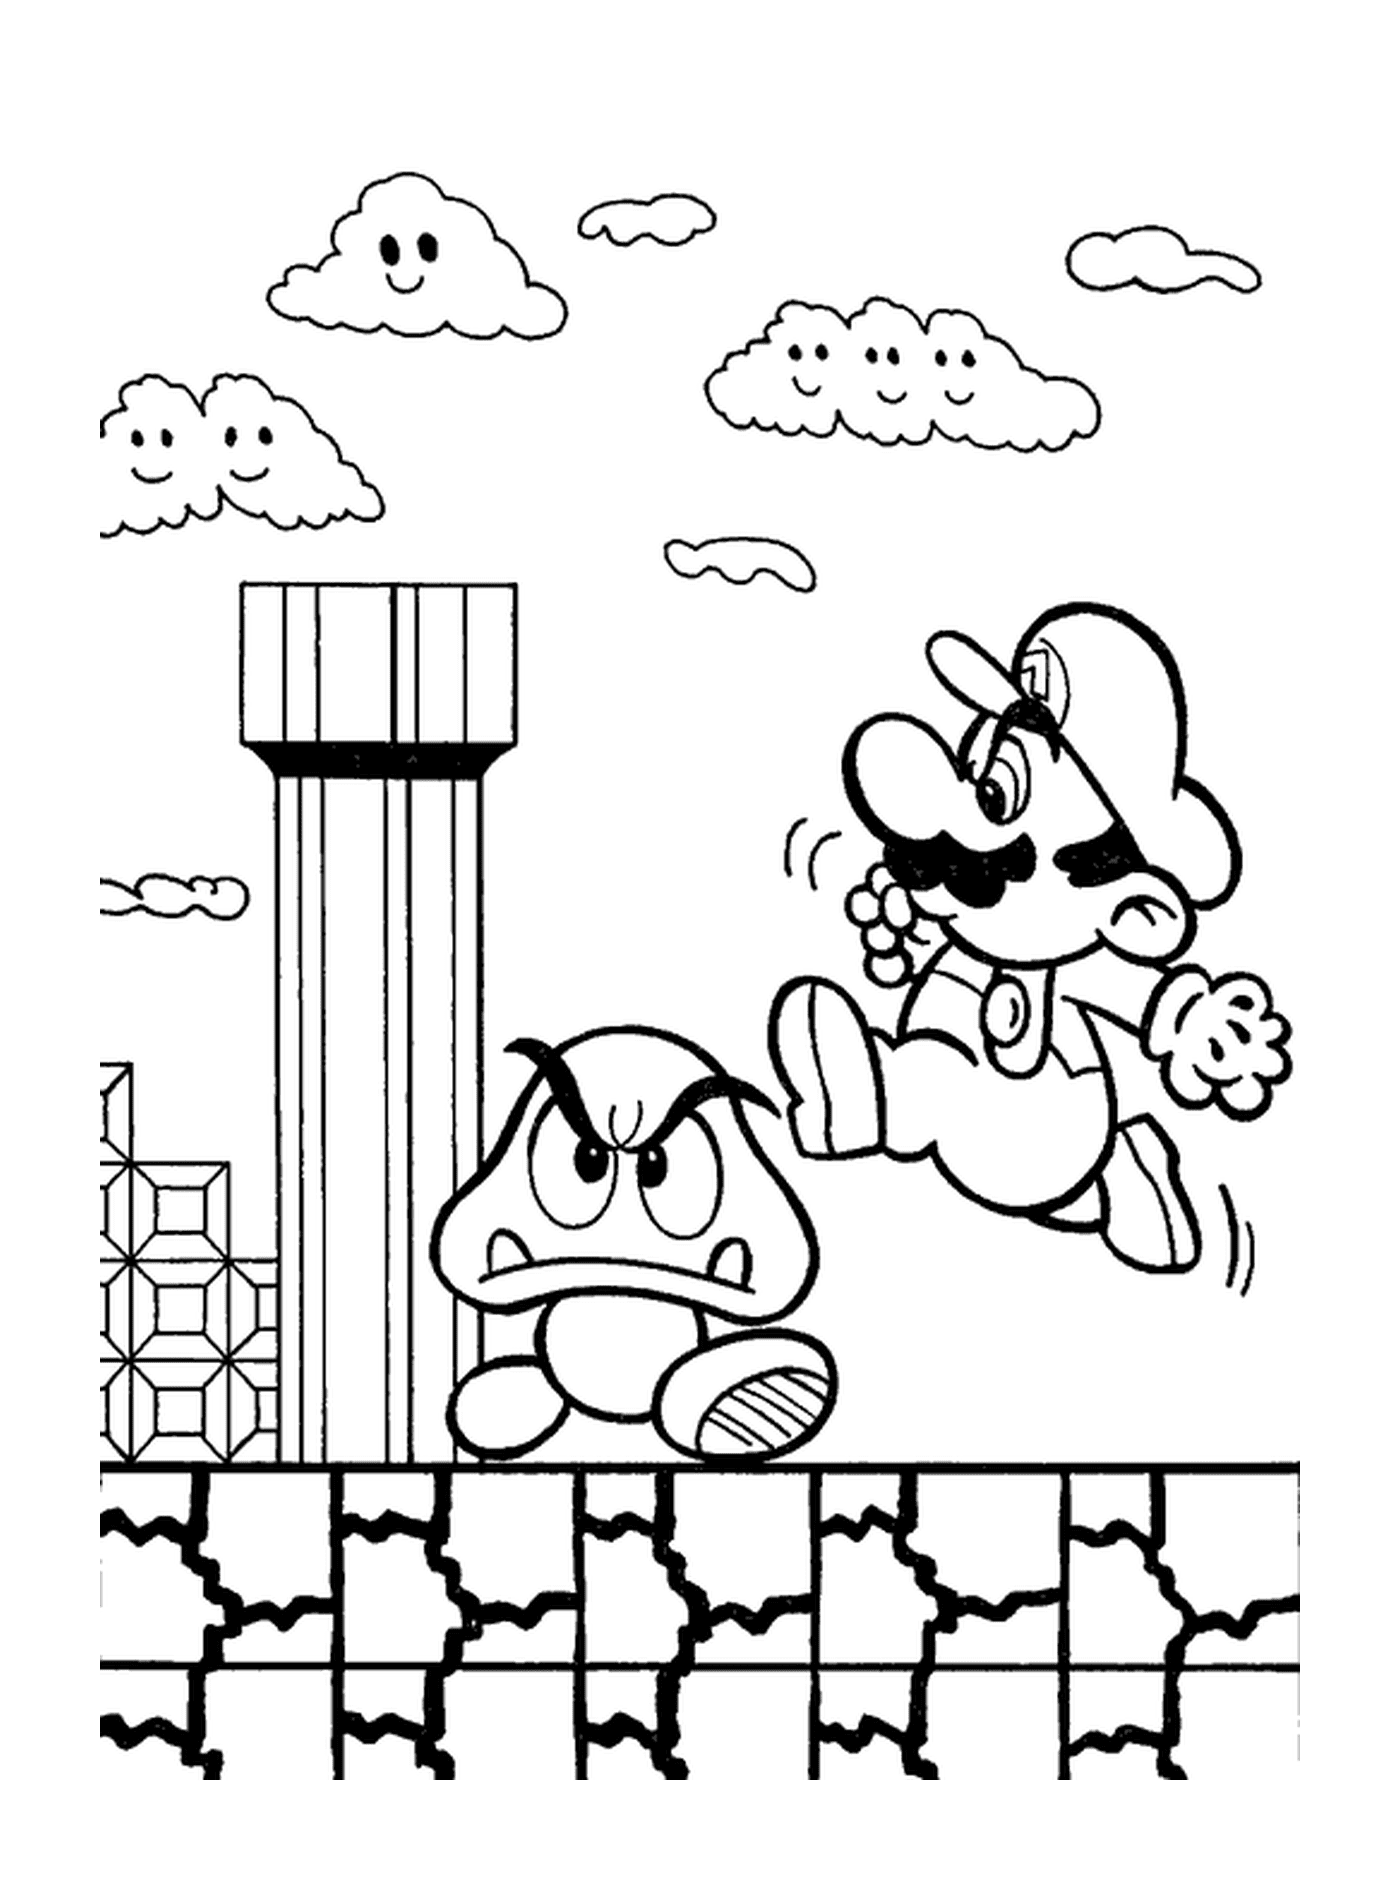   Mario saute sur un champignon magique 